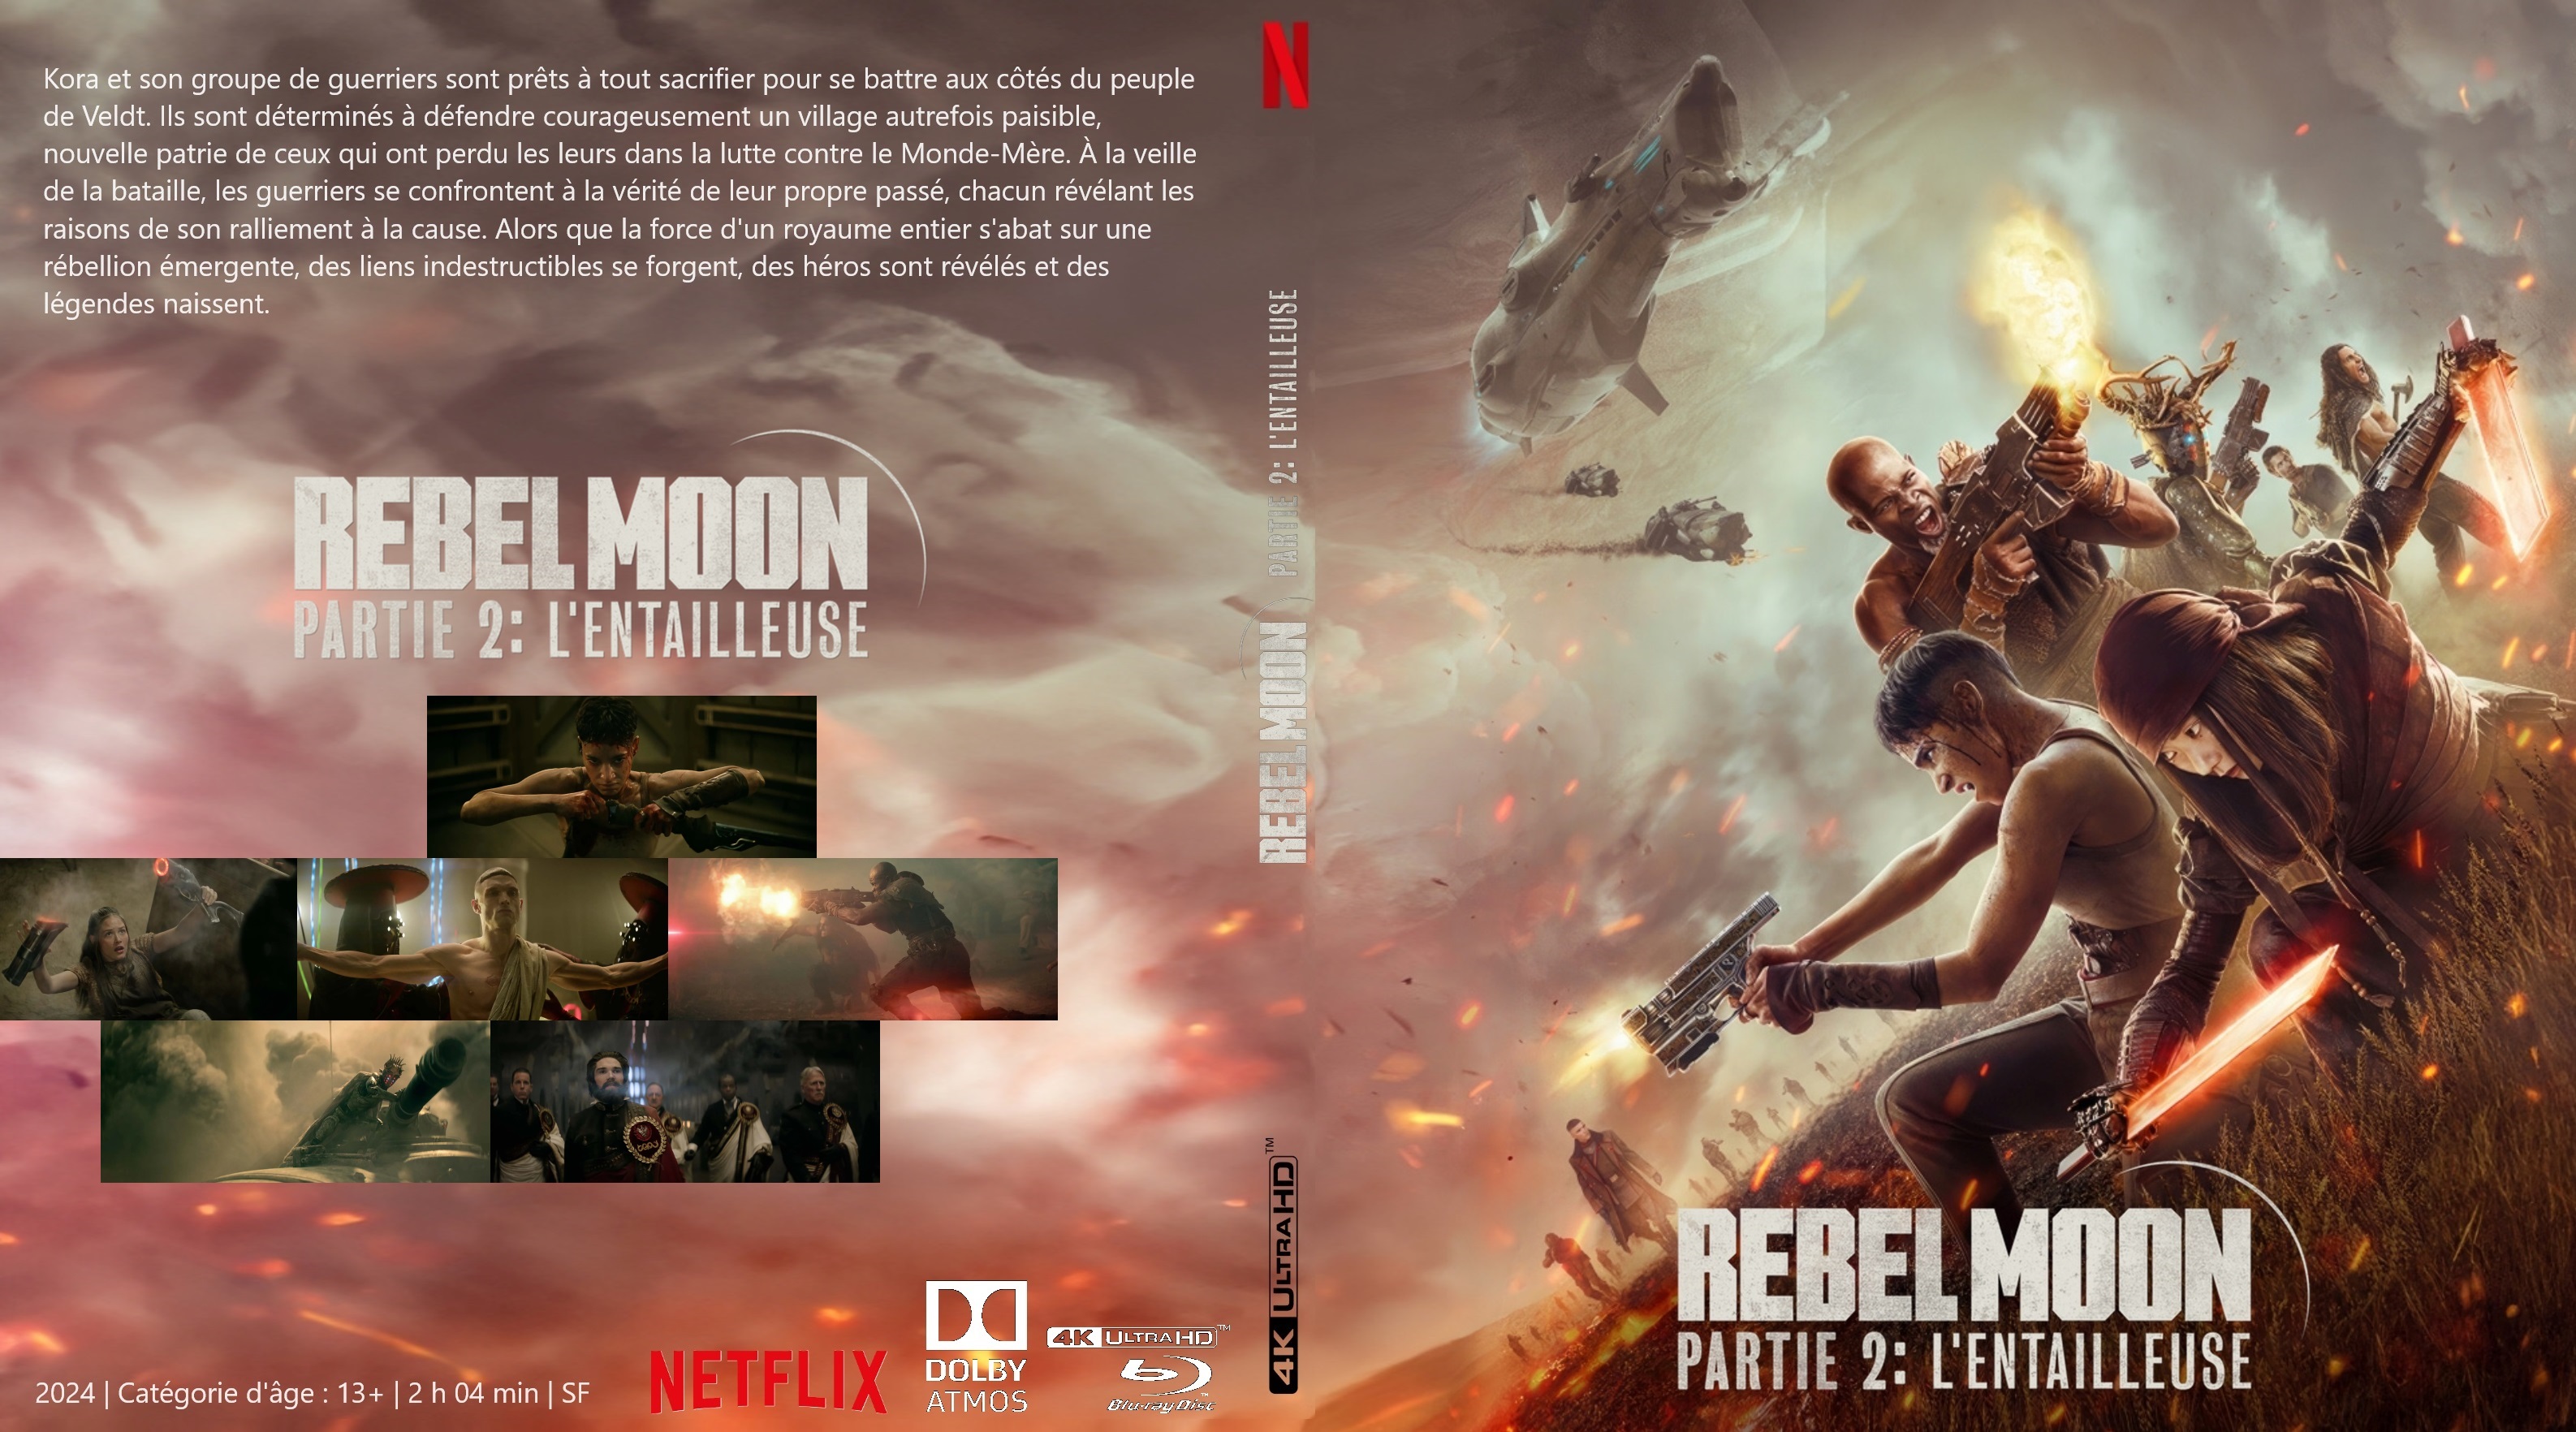 Jaquette DVD Rebel Moon partie 2 L